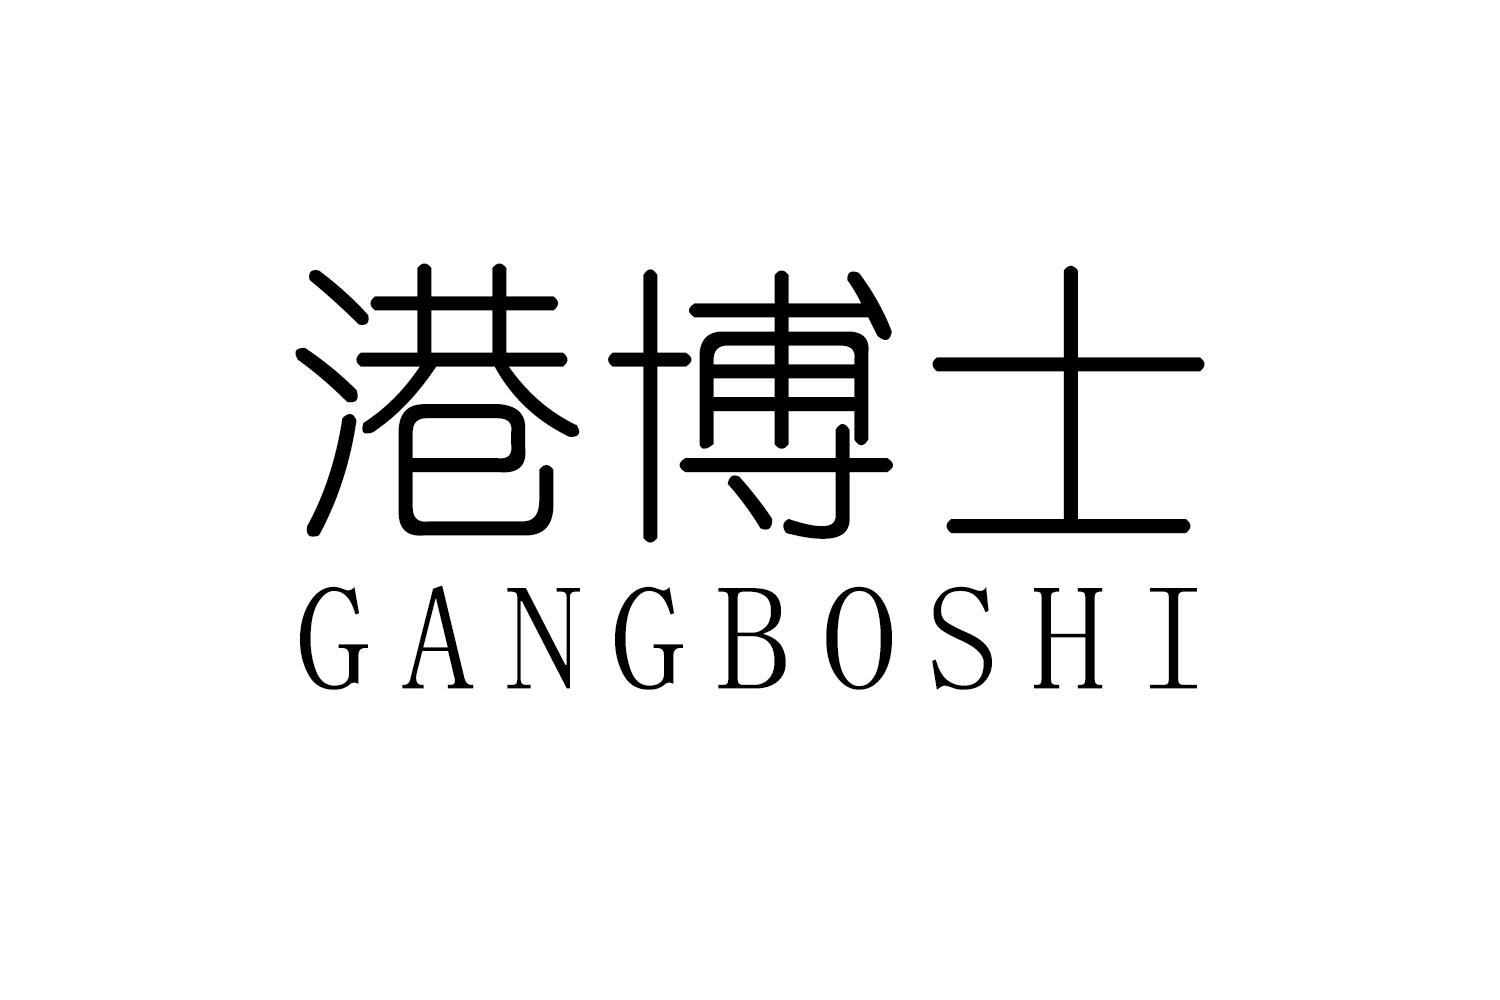 港博士
GANGBOSHI